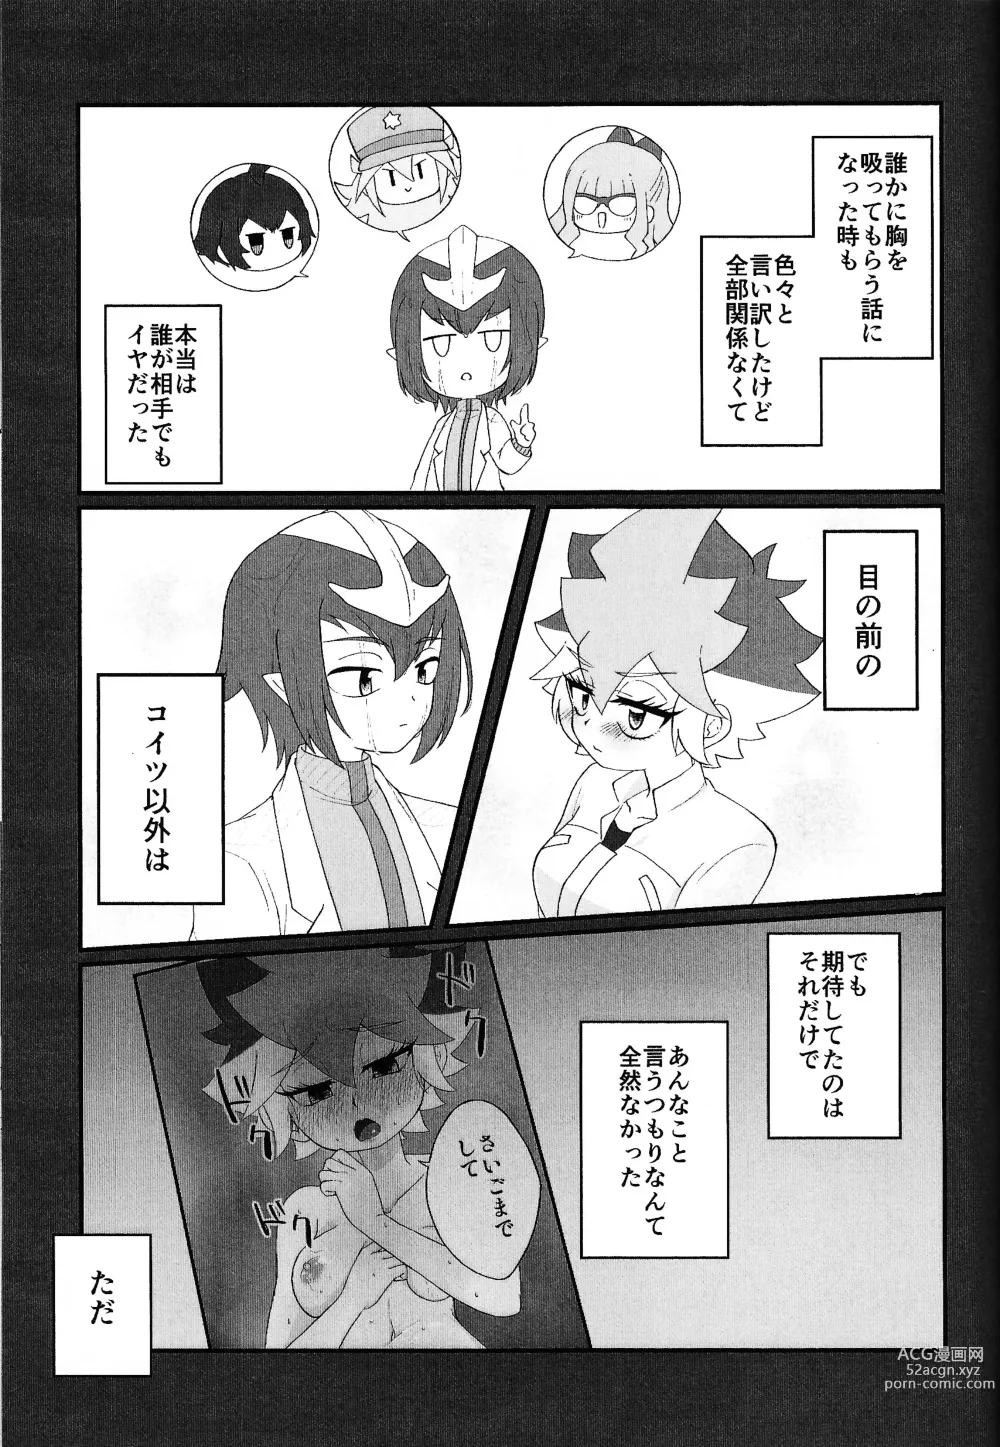 Page 36 of doujinshi Pandoranohako ka kindan no kajitsu ka